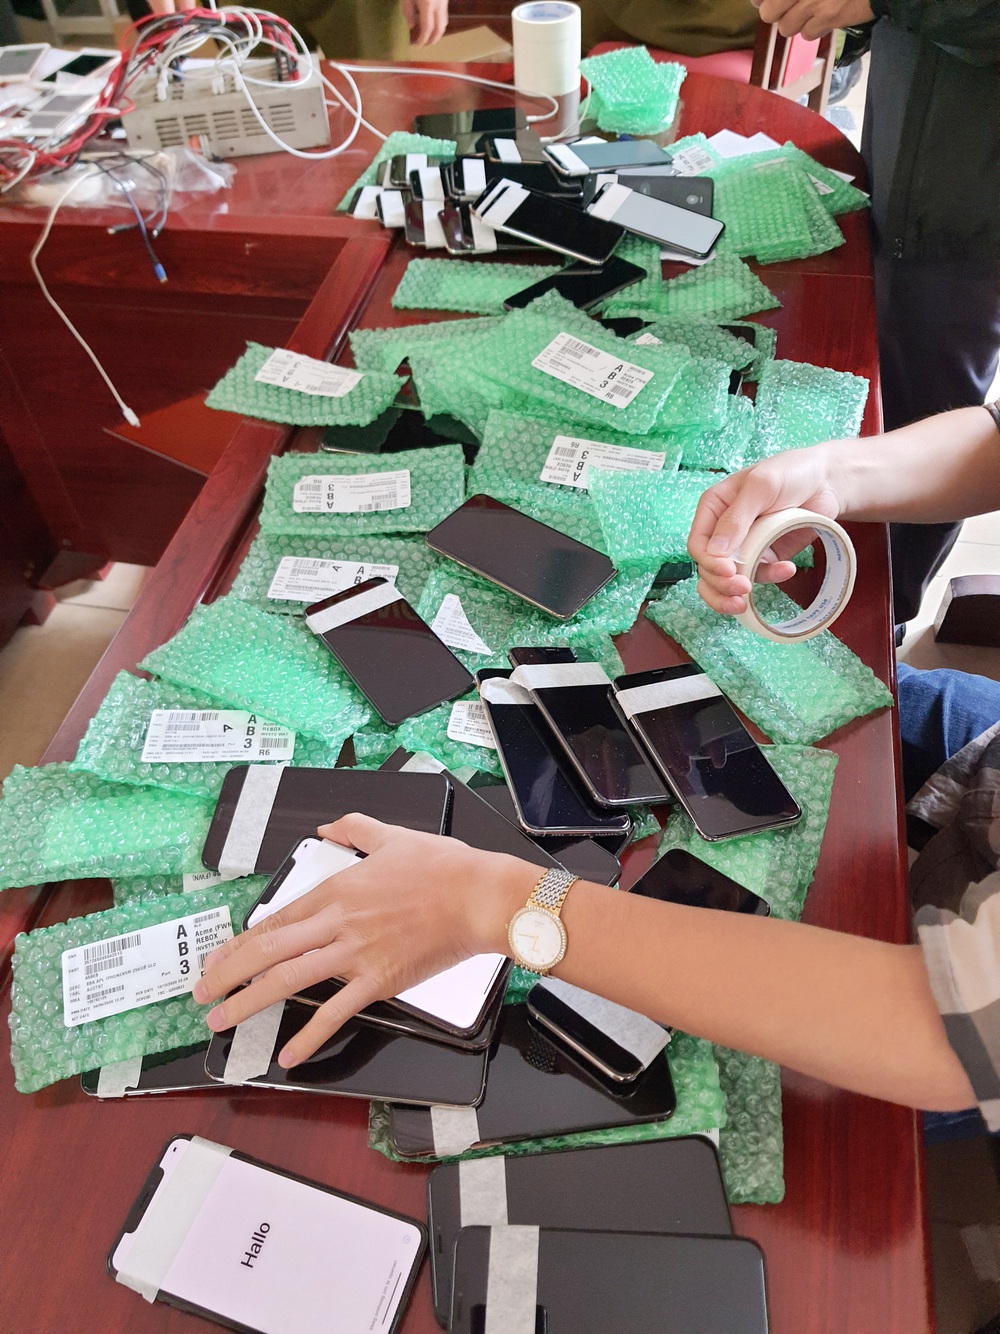 Thu giữ gần 1.000 chiếc điện thoại iPhone nhập lậu qua đường hàng không - Ảnh 5.